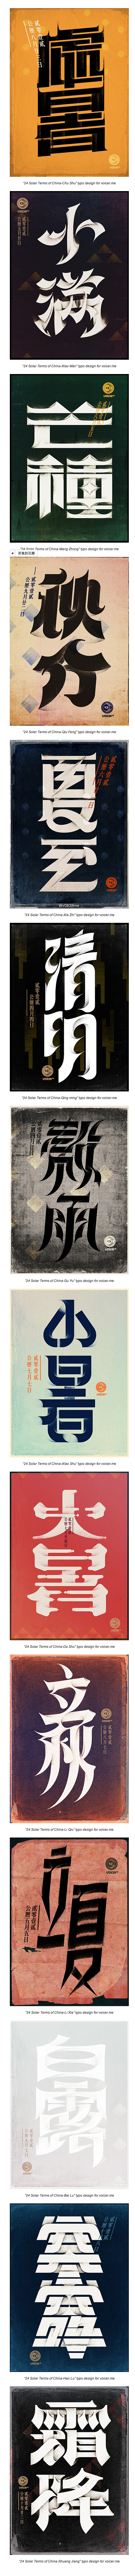 中国节气字体设计